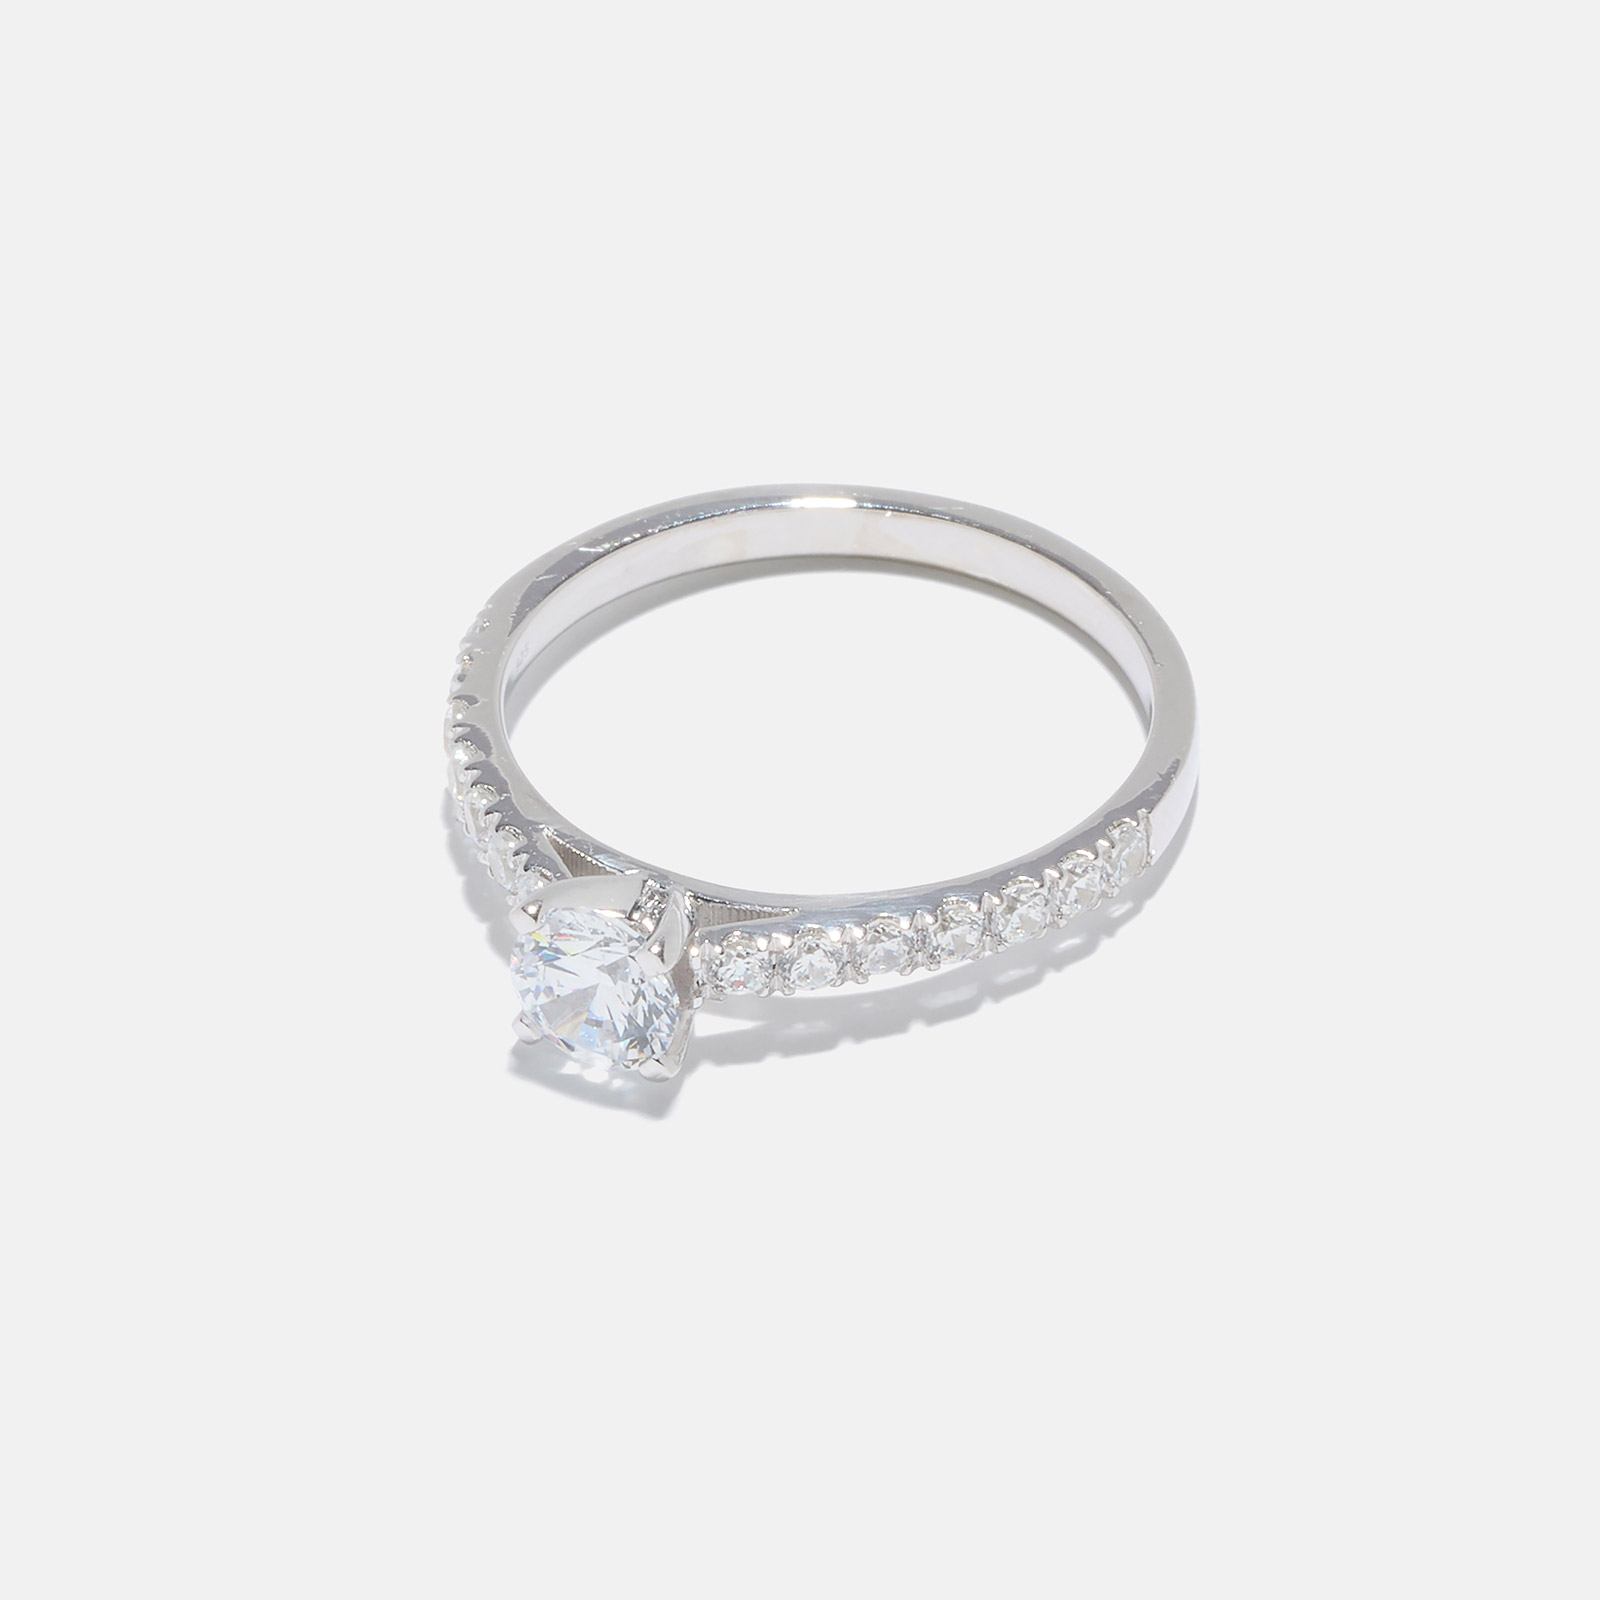 Ring Reneé - 18k vitguld, labbodlade diamanter 0,5 carat